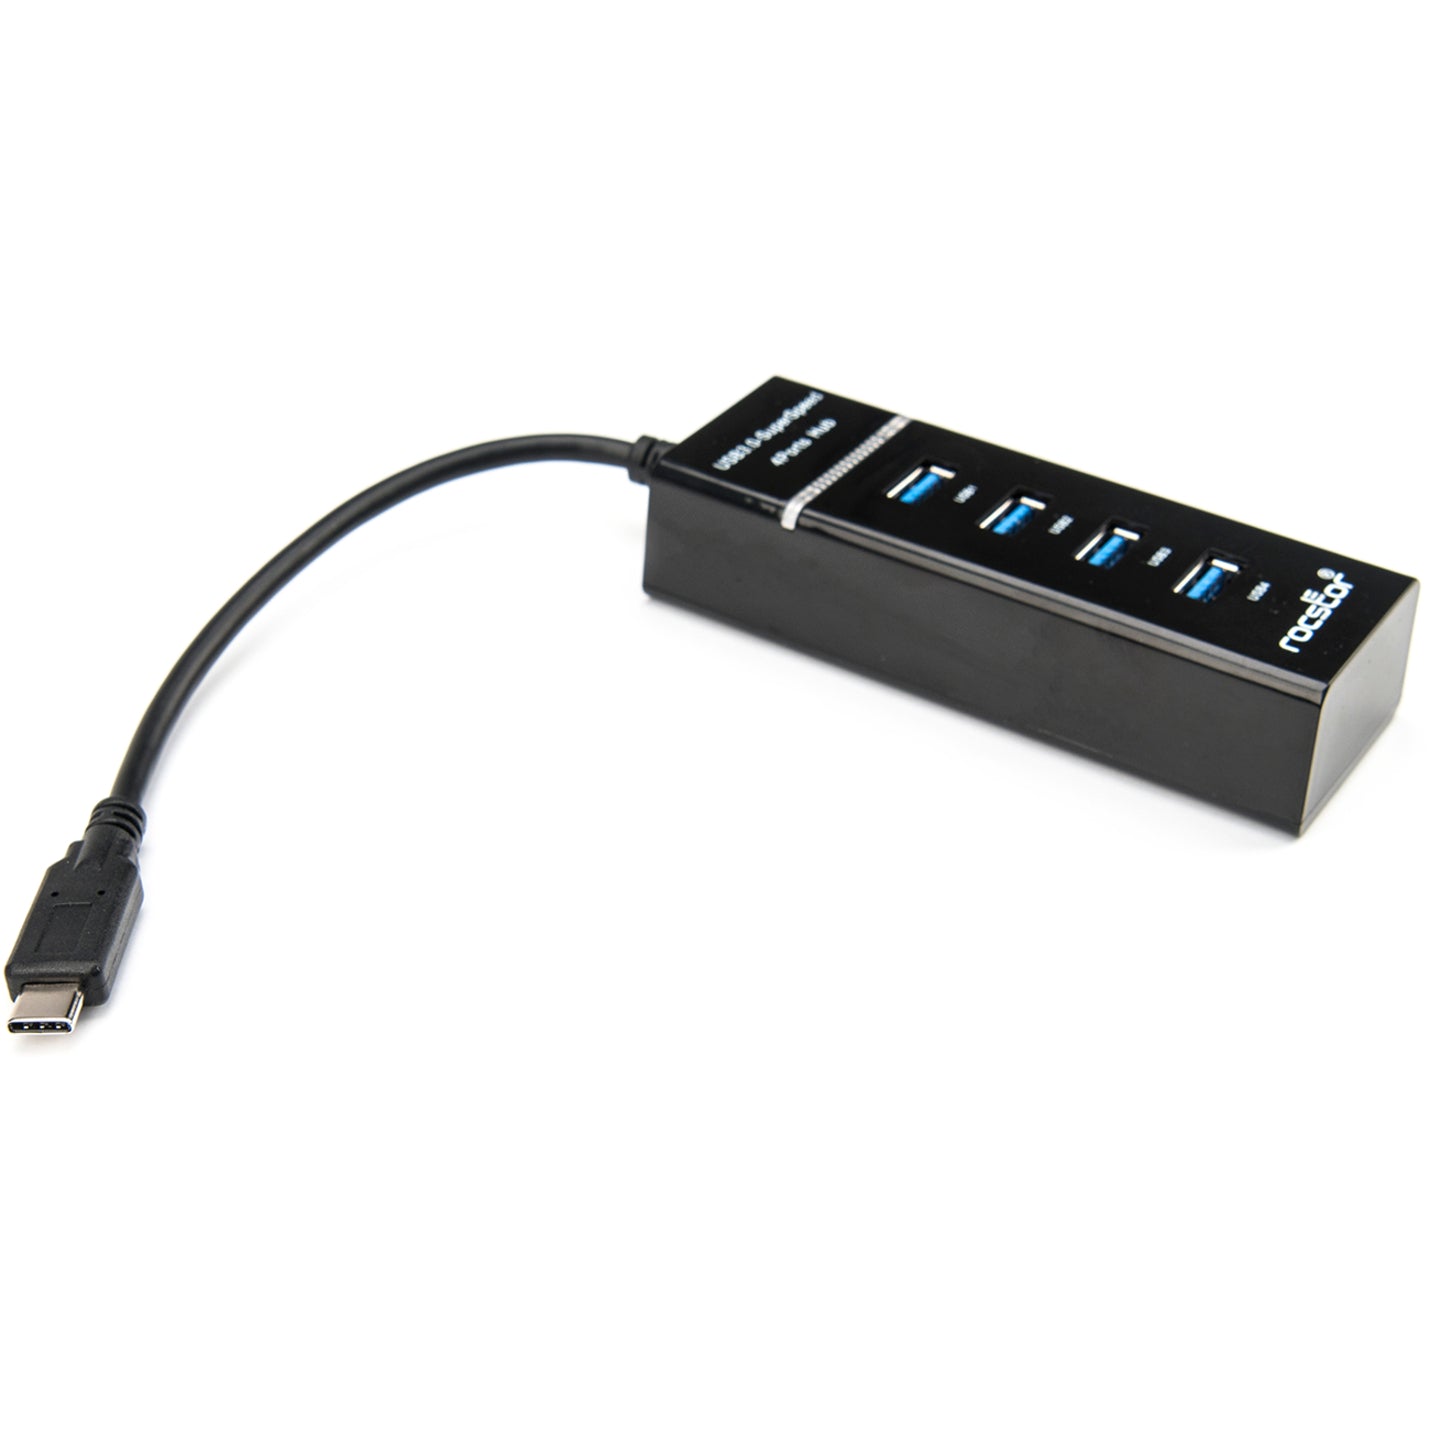 Rocstor Y10A228-B1 프리미엄 슬림 휴대용 4포트 USB C 허브 4 USB 3.0 포트 버스 전원 공급